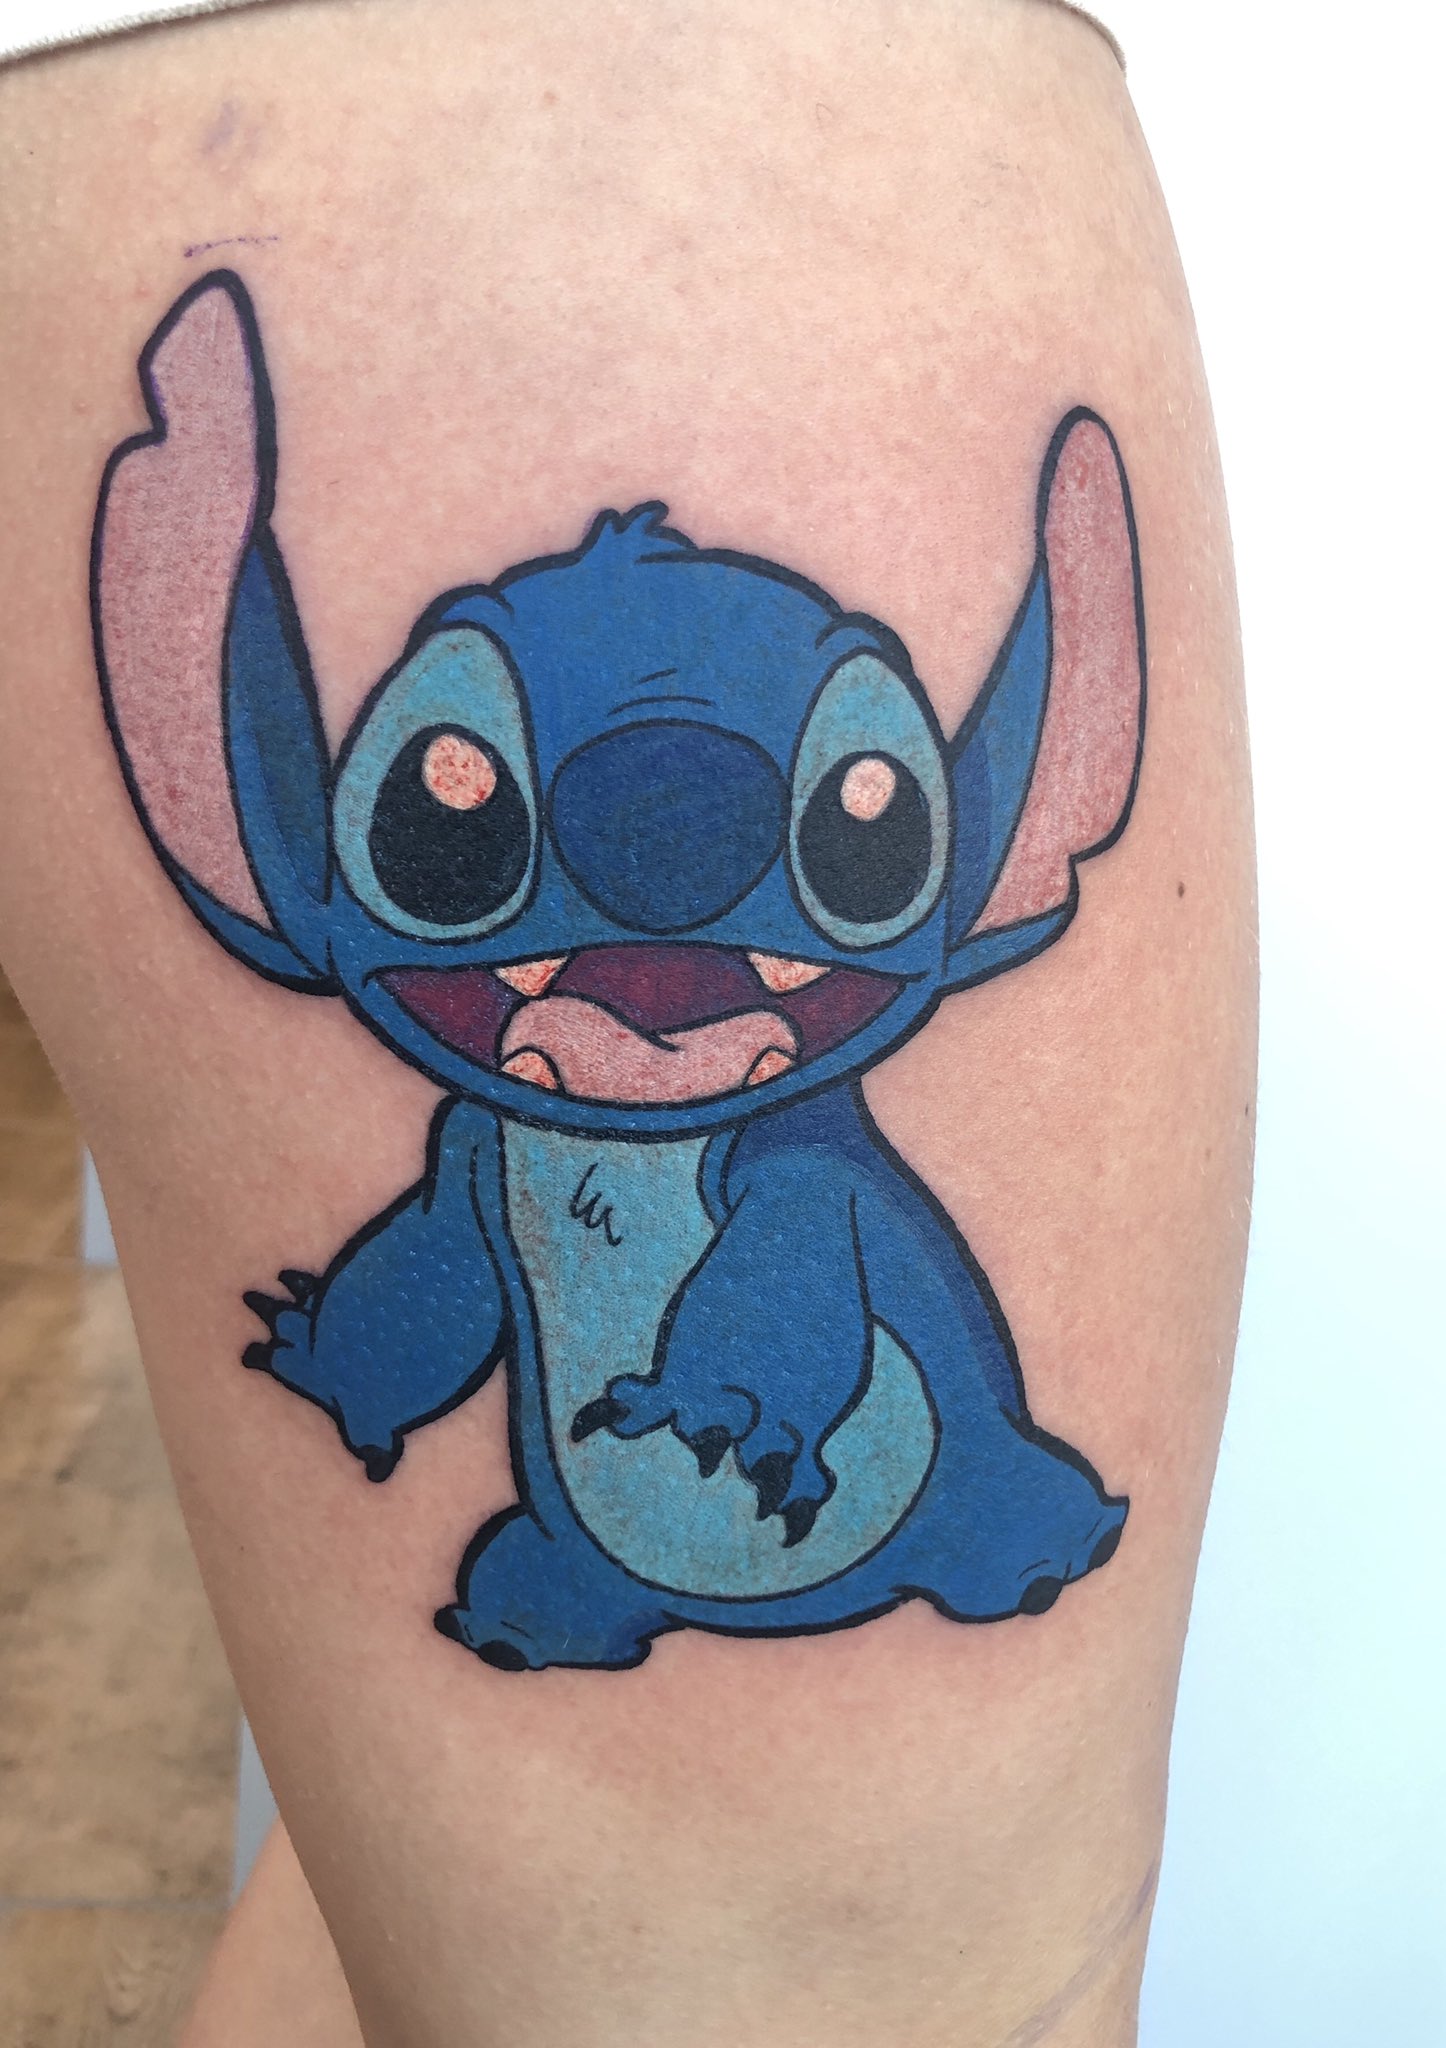 Alekskawai 🎨🐰 on X: Tattoo du jour 😙💙 #stitch